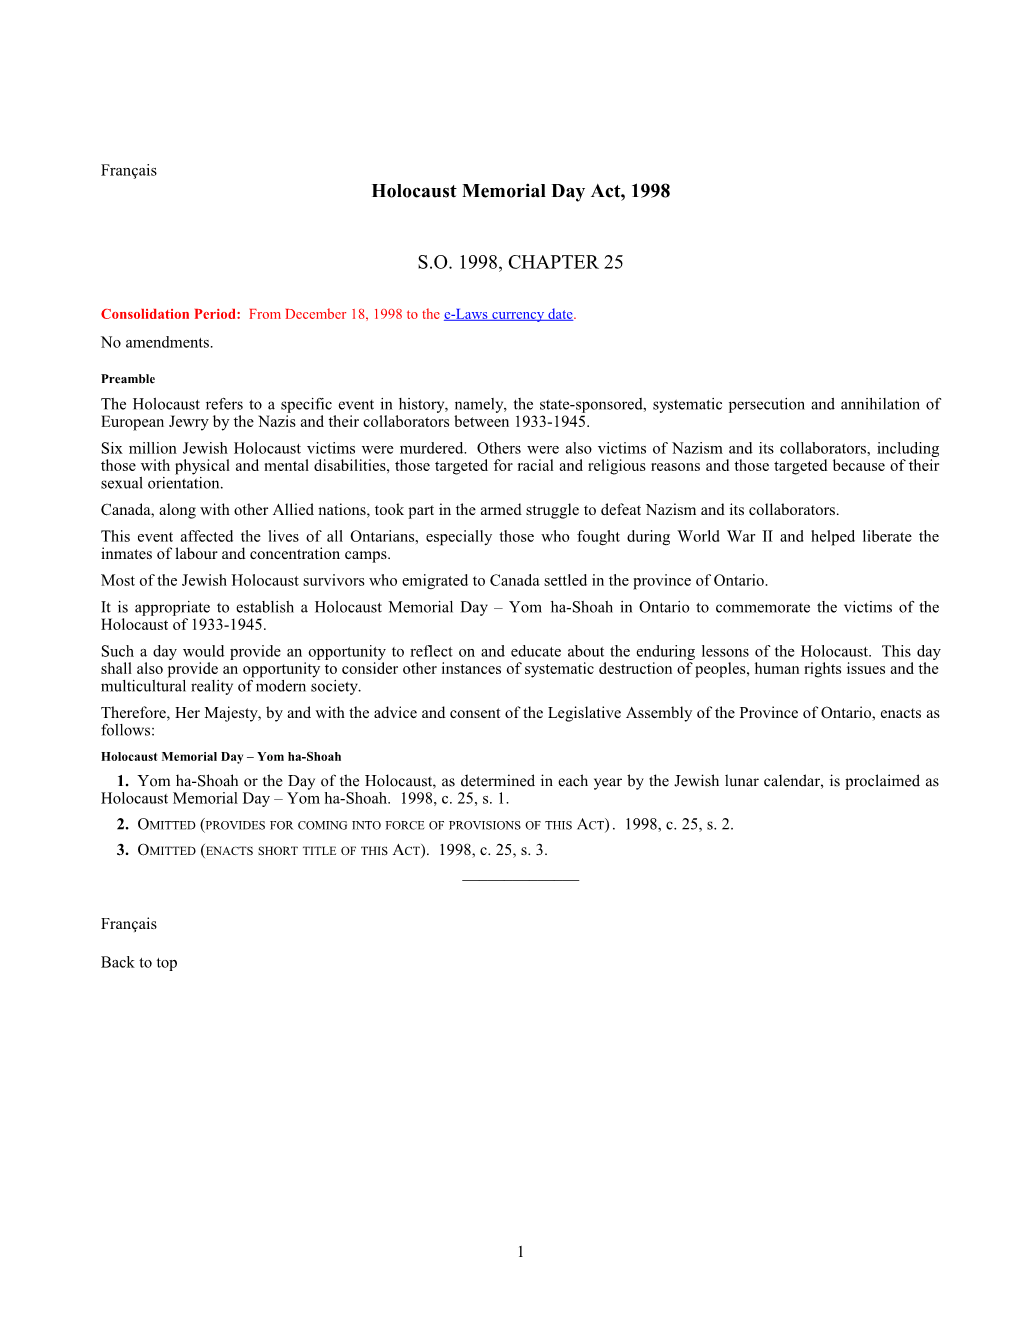 Holocaust Memorial Day Act, 1998, S.O. 1998, C. 25